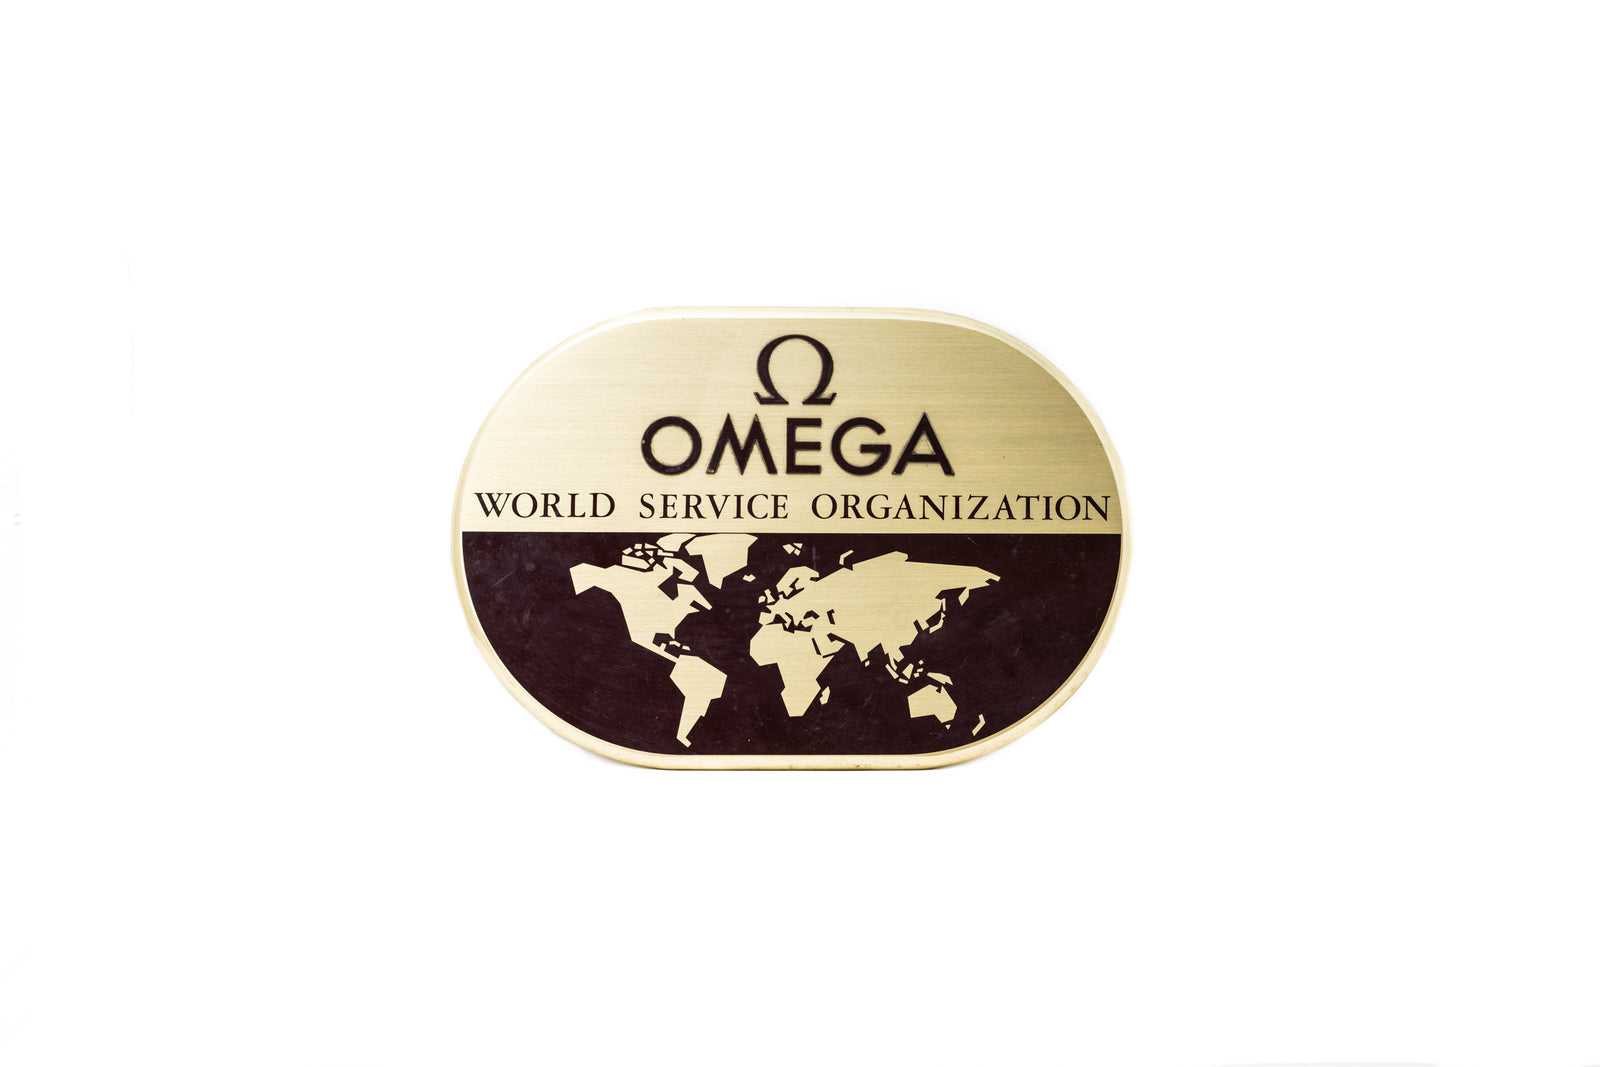 Omega World Service Organization Signage